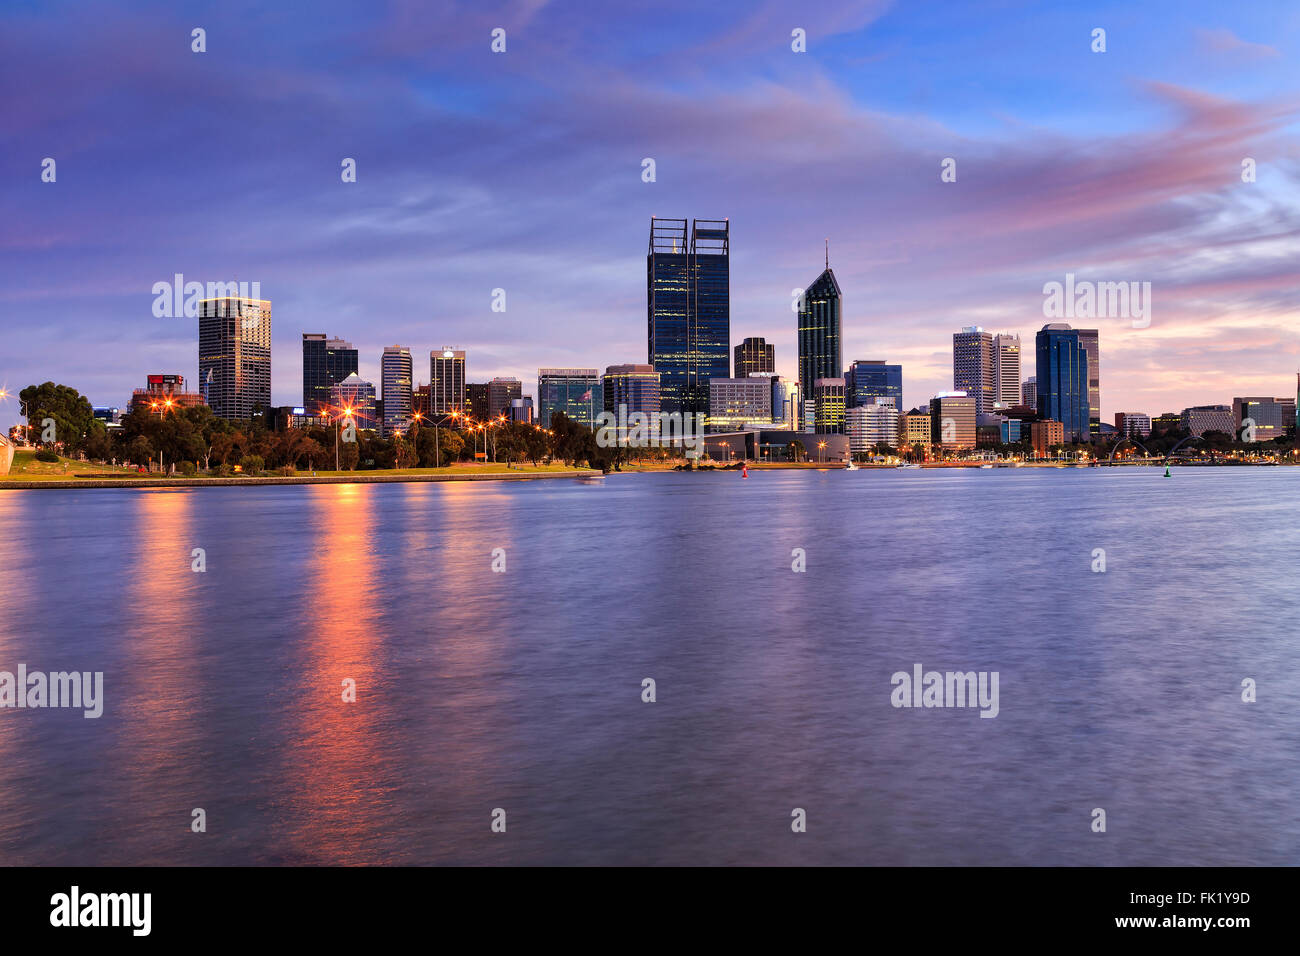 La ville de Perth CBD sur Swan River au lever du soleil. Allumé en tours de ville capitale de l'ouest de l'Australie en raison de lumières Banque D'Images